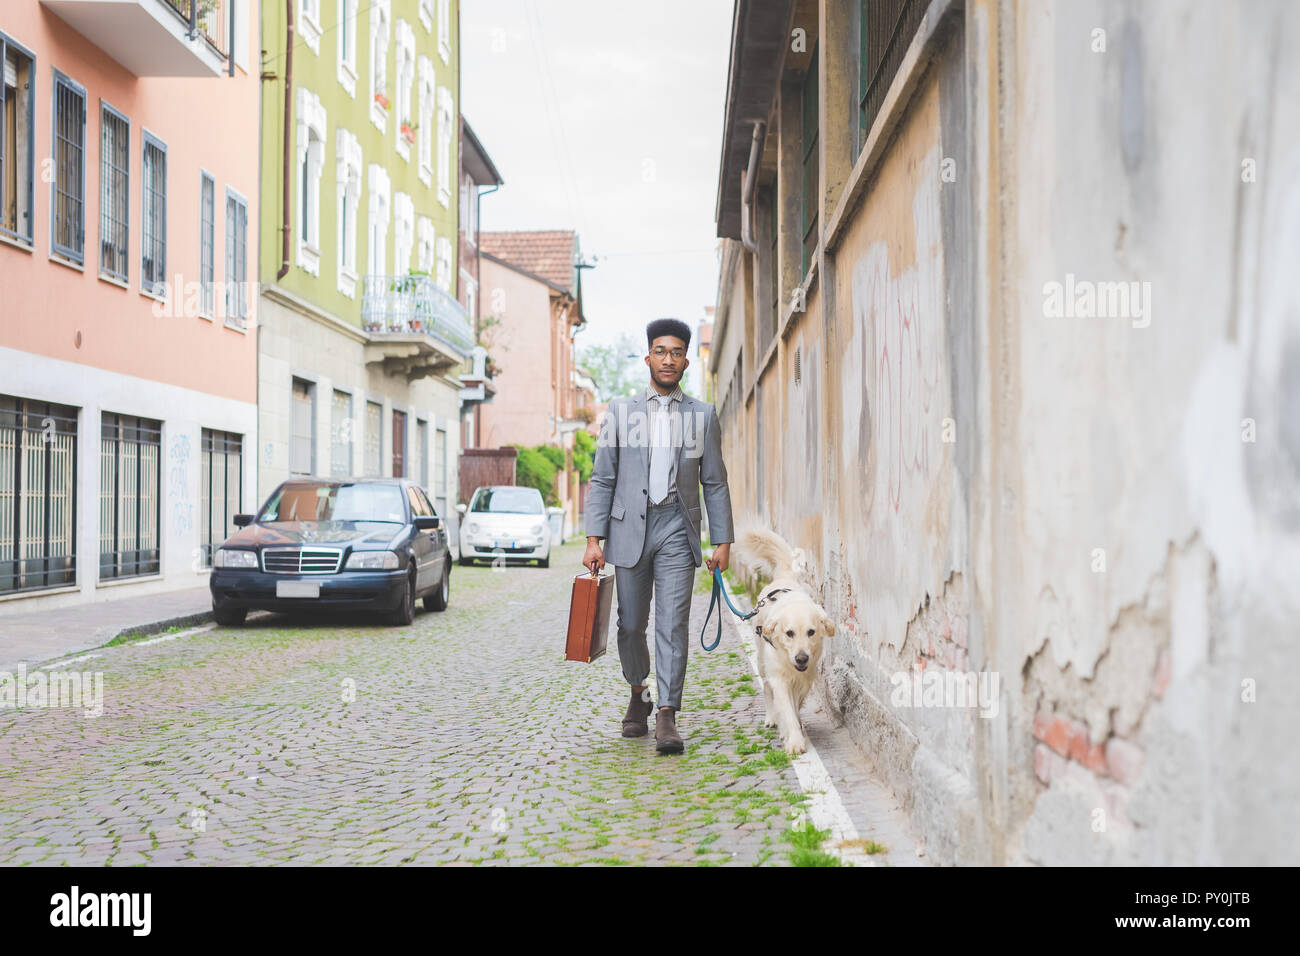 Junge schwarze business Man Walking im Freien zu arbeiten - Wirtschaft, Arbeit, Job Konzept Stockfoto